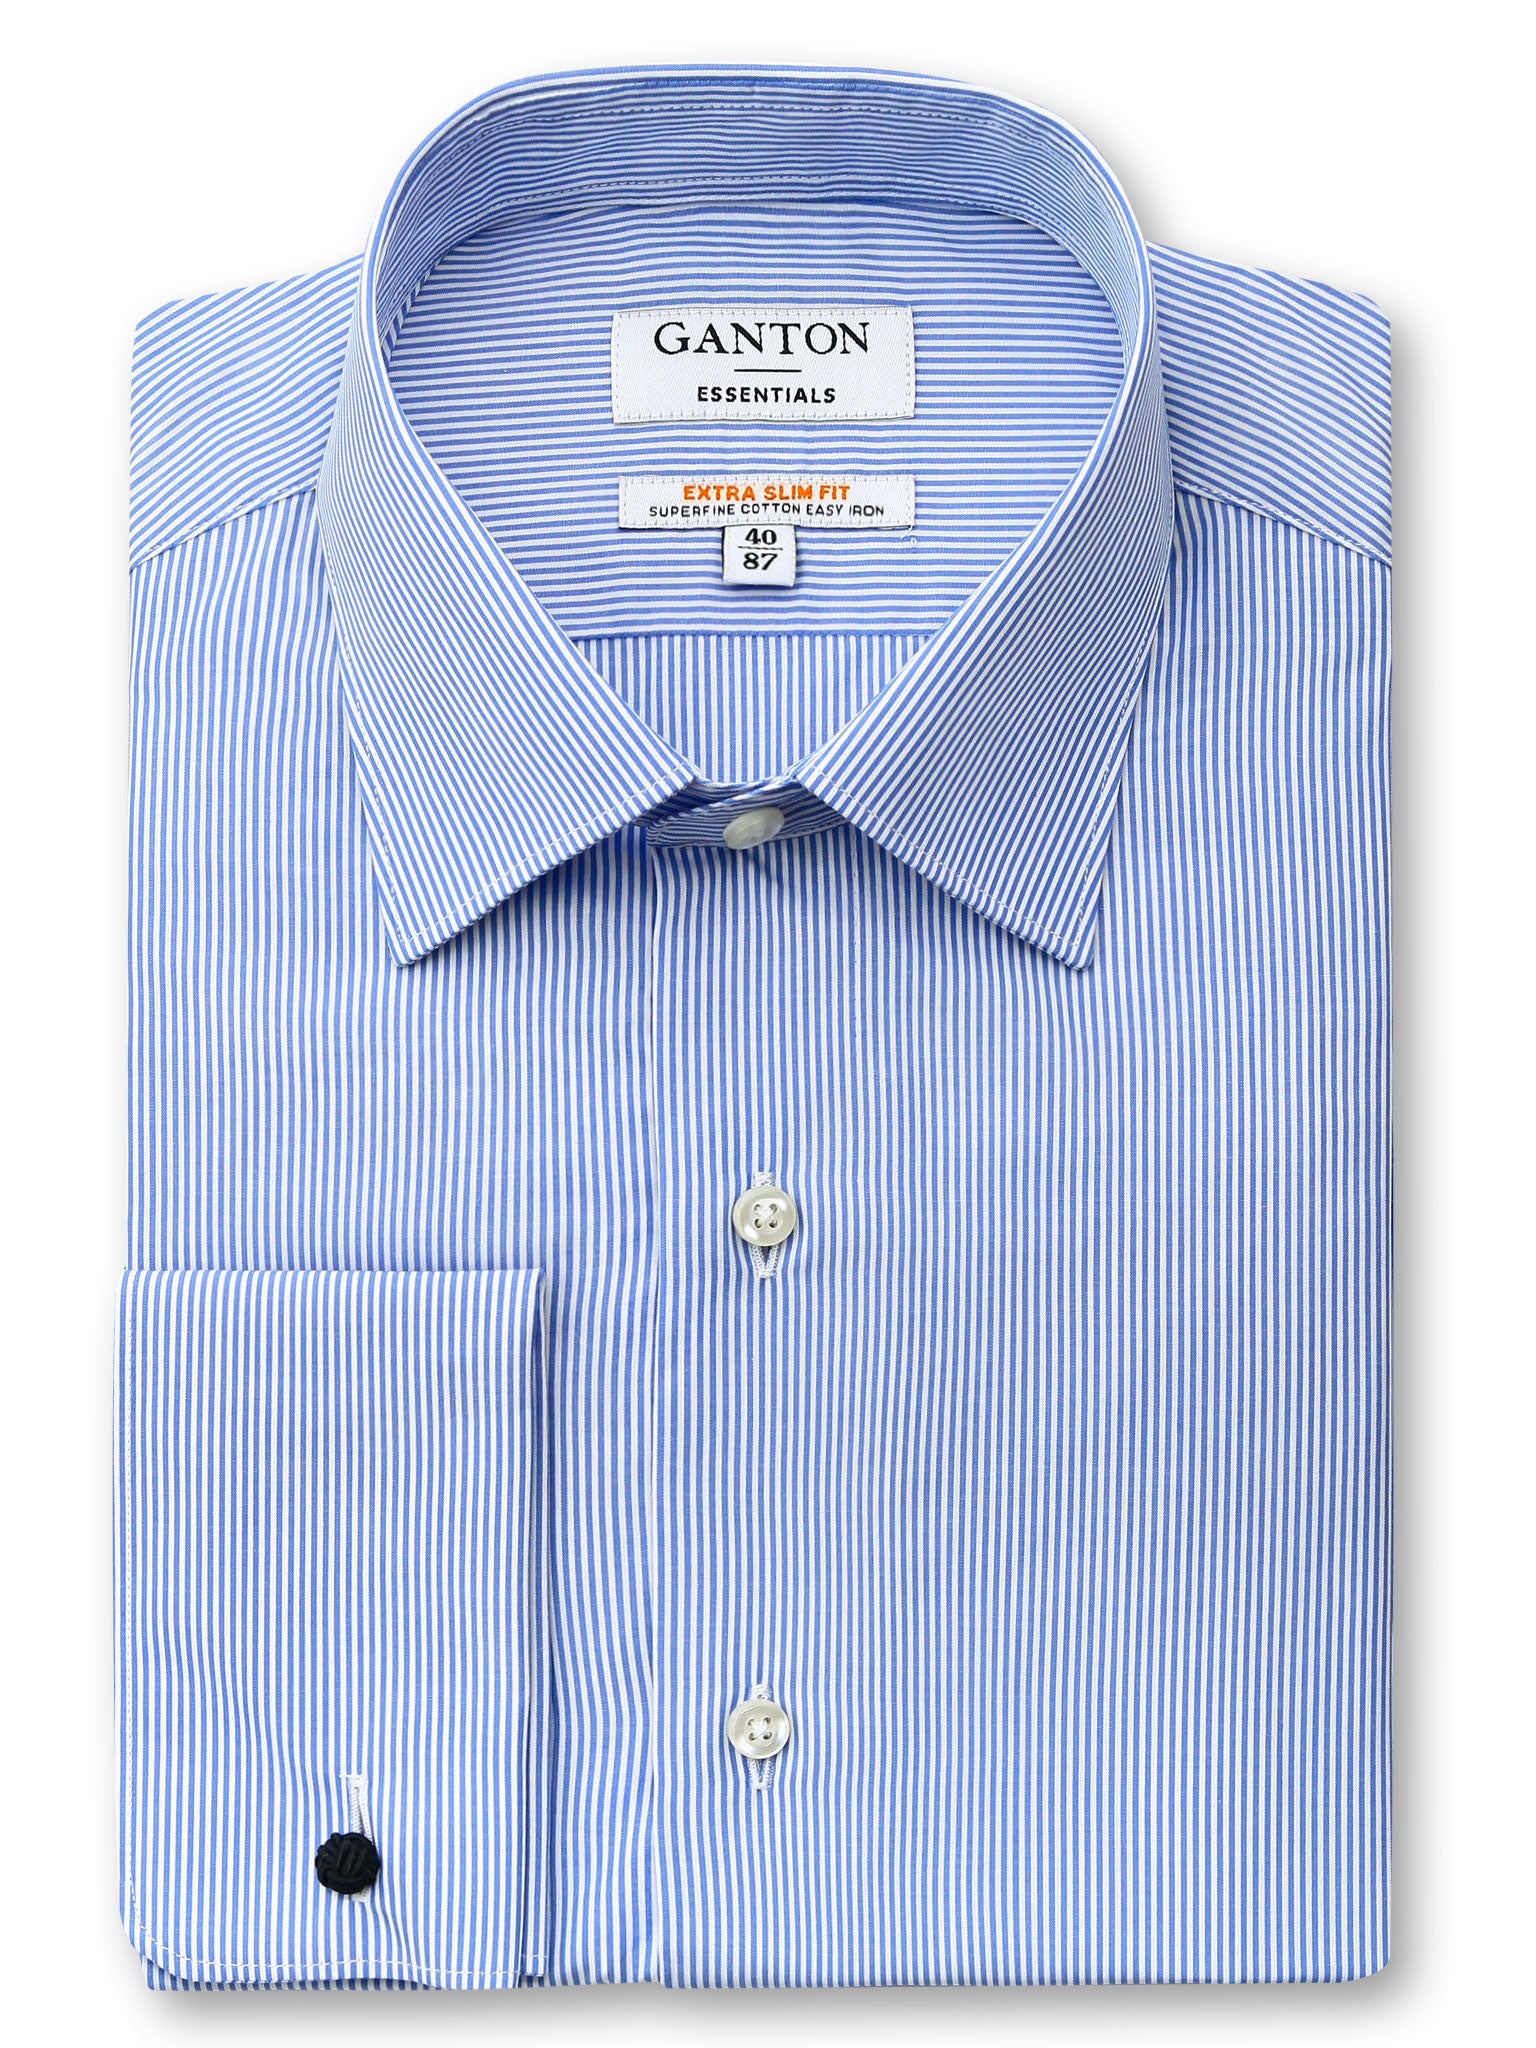 Mid Blue White Stripe Slim Fit Eton Easy Iron Superfine Cotton Essentials Shirt